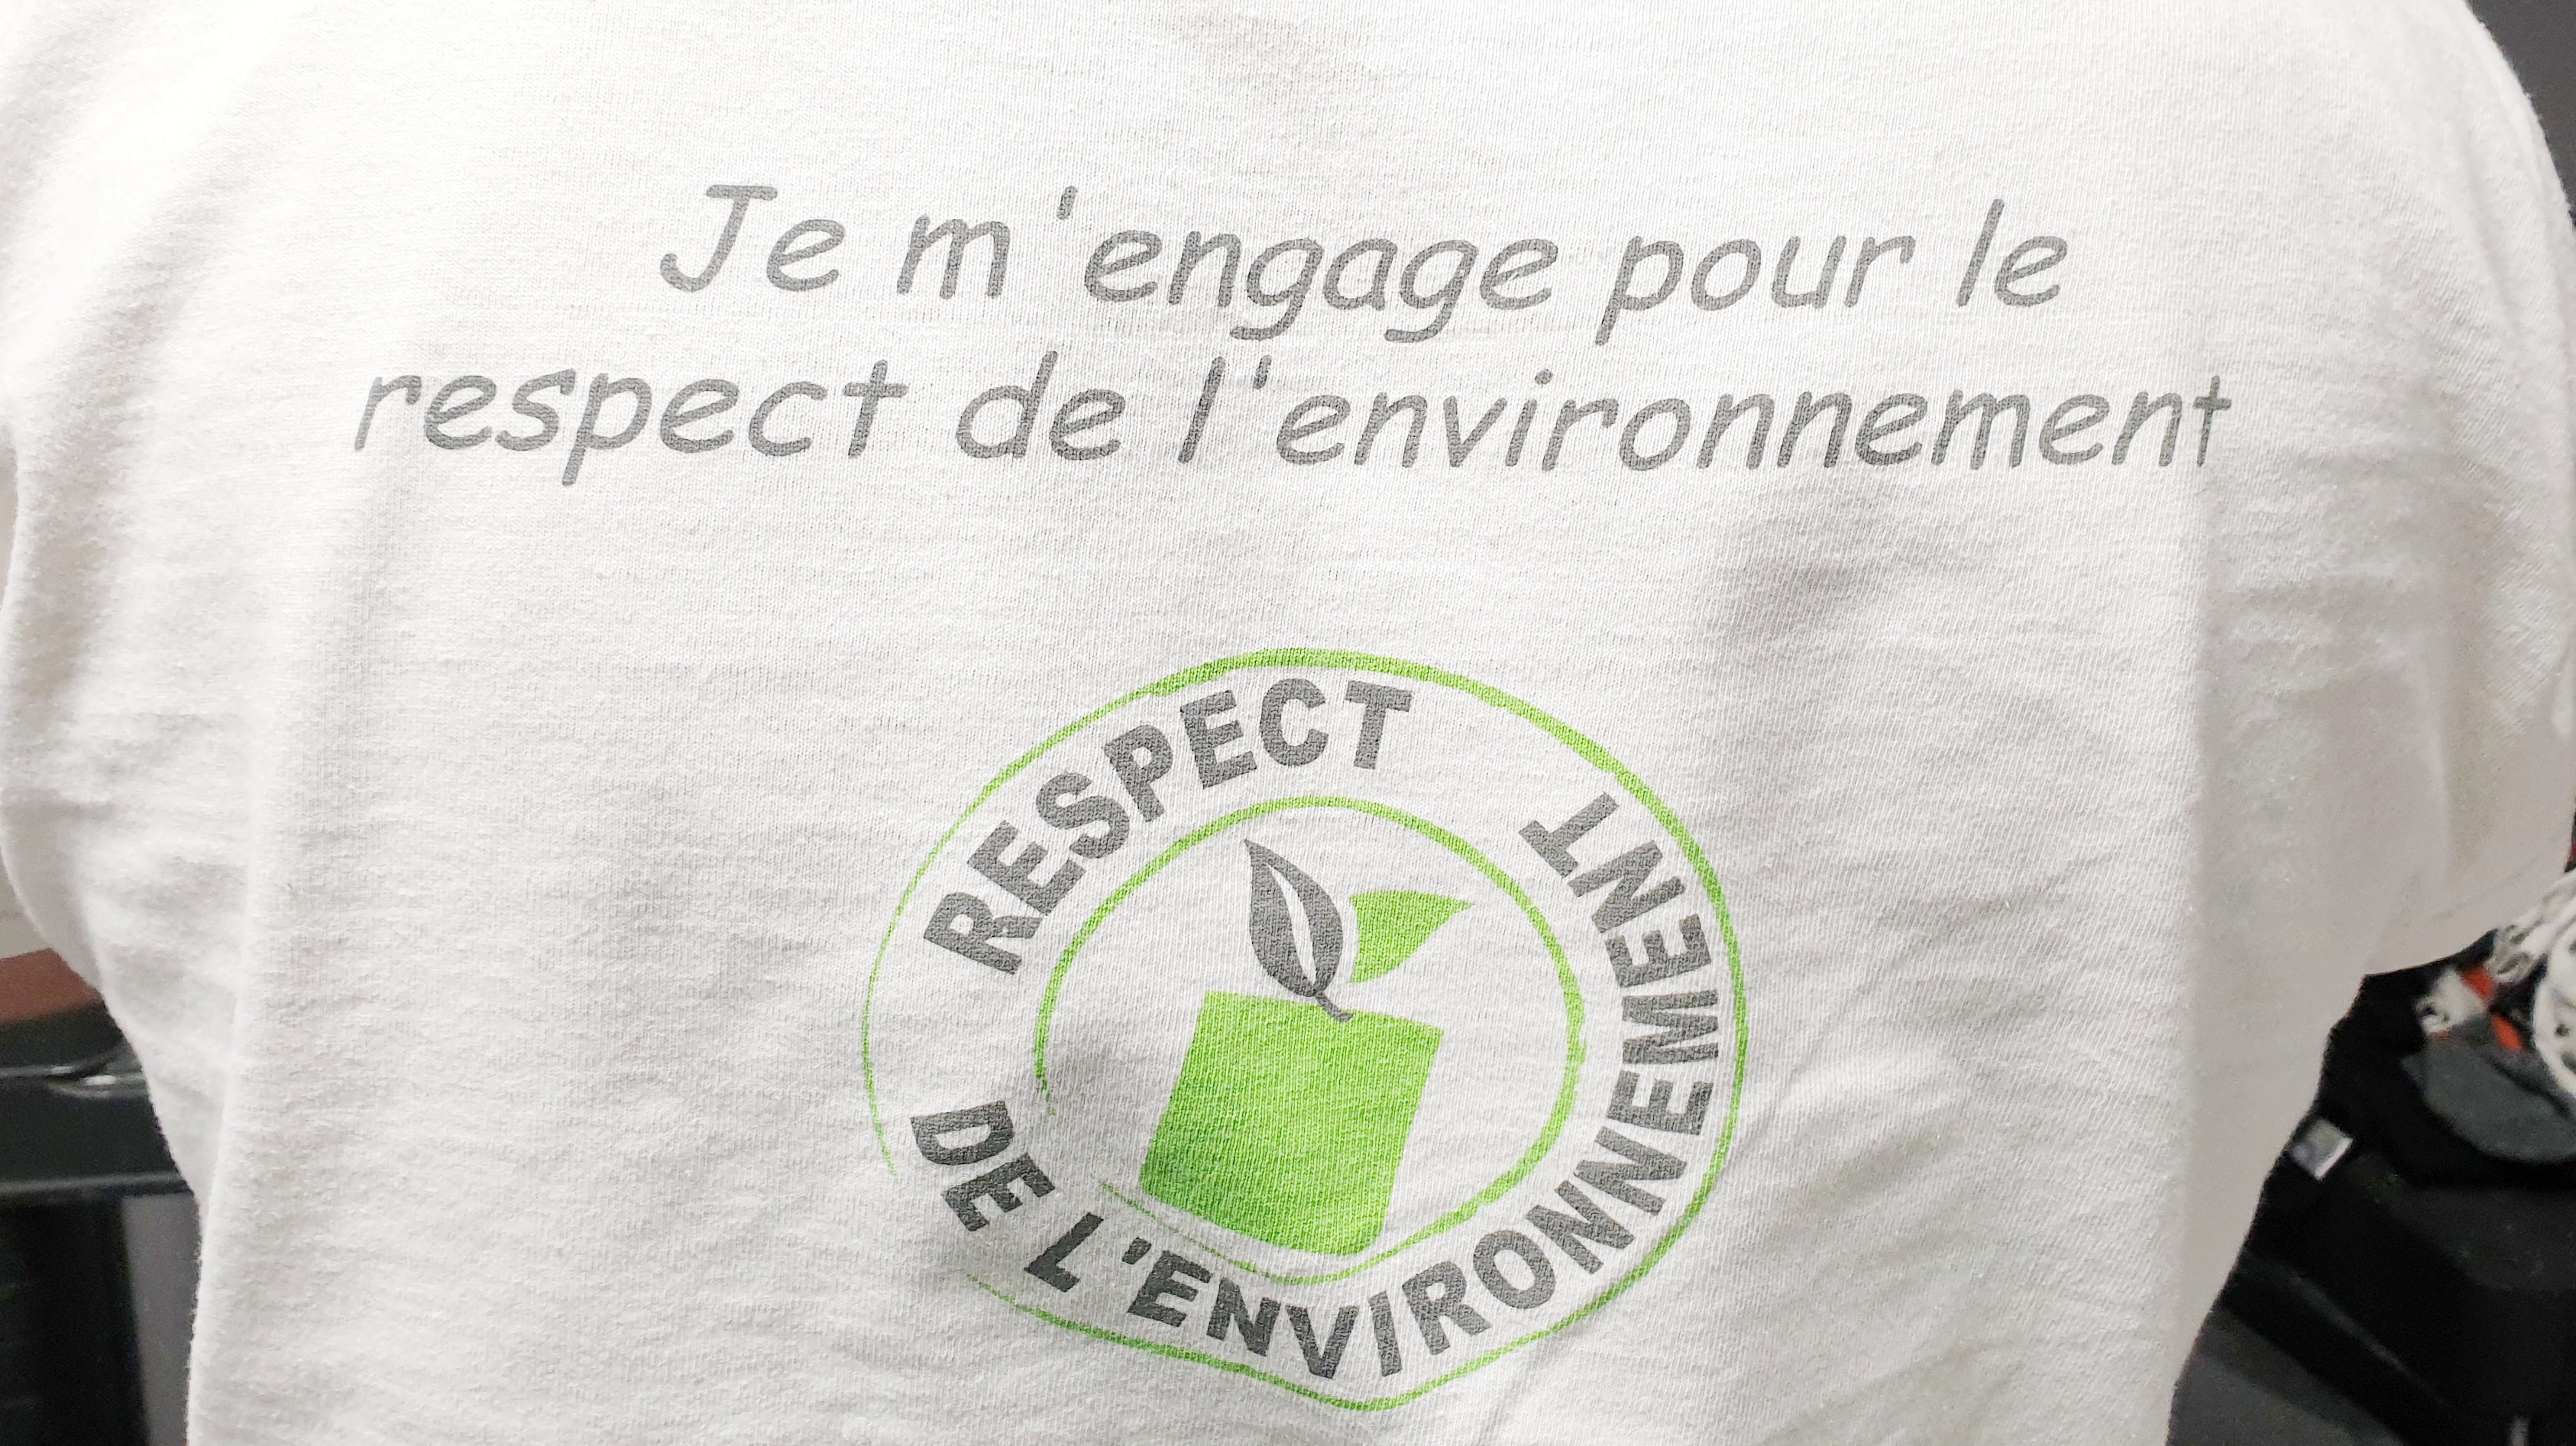 Daniel Henriet porte un t-shirt avec inscrit qu'il s'engage pour le respect de l'environnement